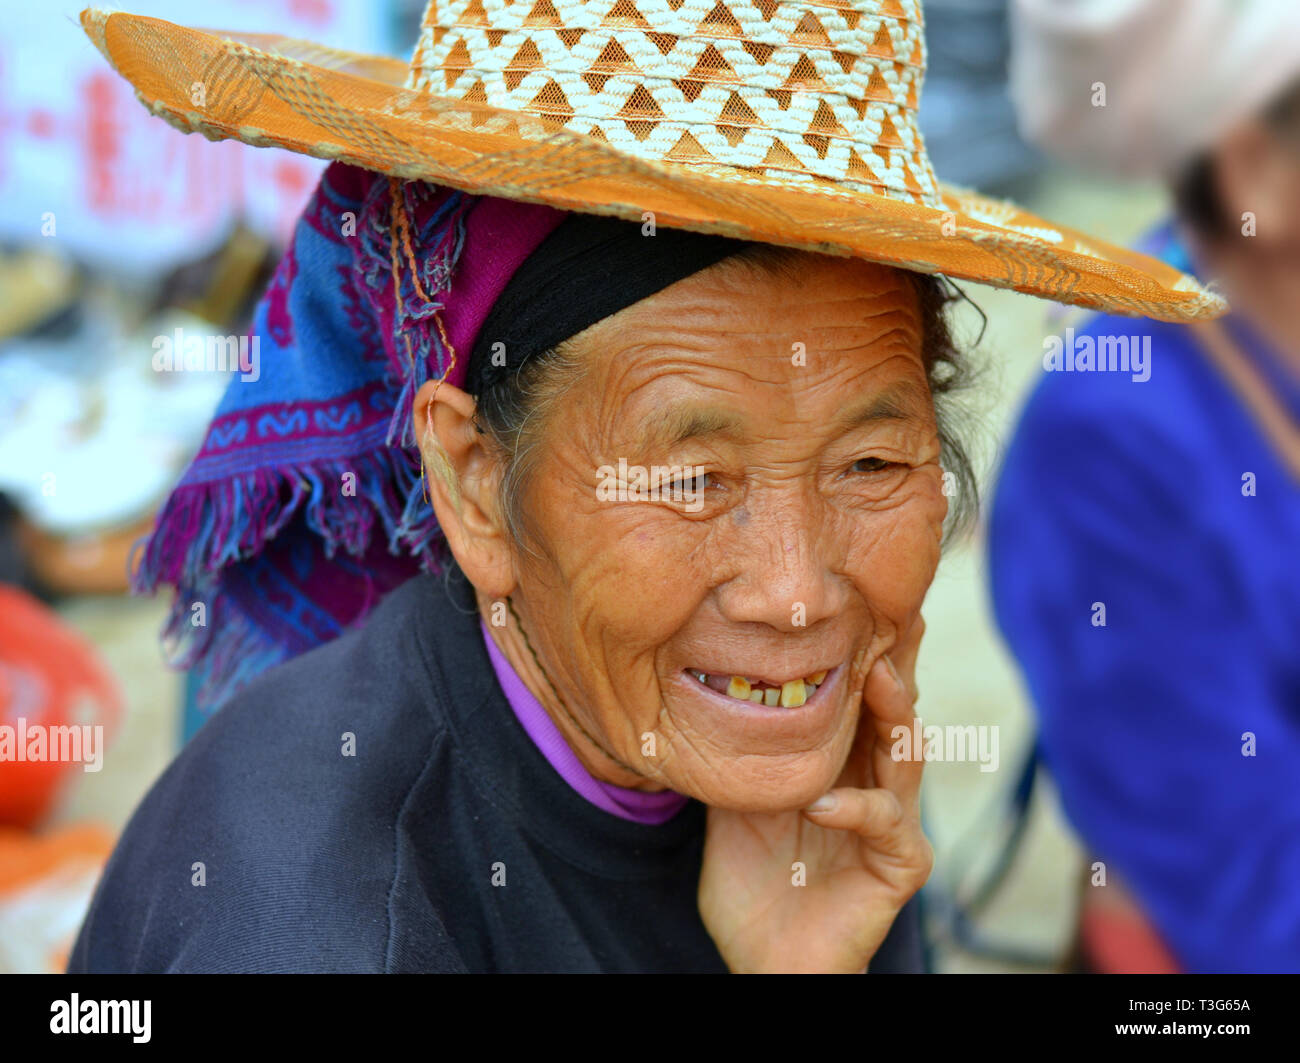 Alte Hani markt Frau (chinesische ethnische Minderheit) mit lebte - Gesicht trägt einen Strohhut über ihre blauen tribal Kopftuch. Stockfoto